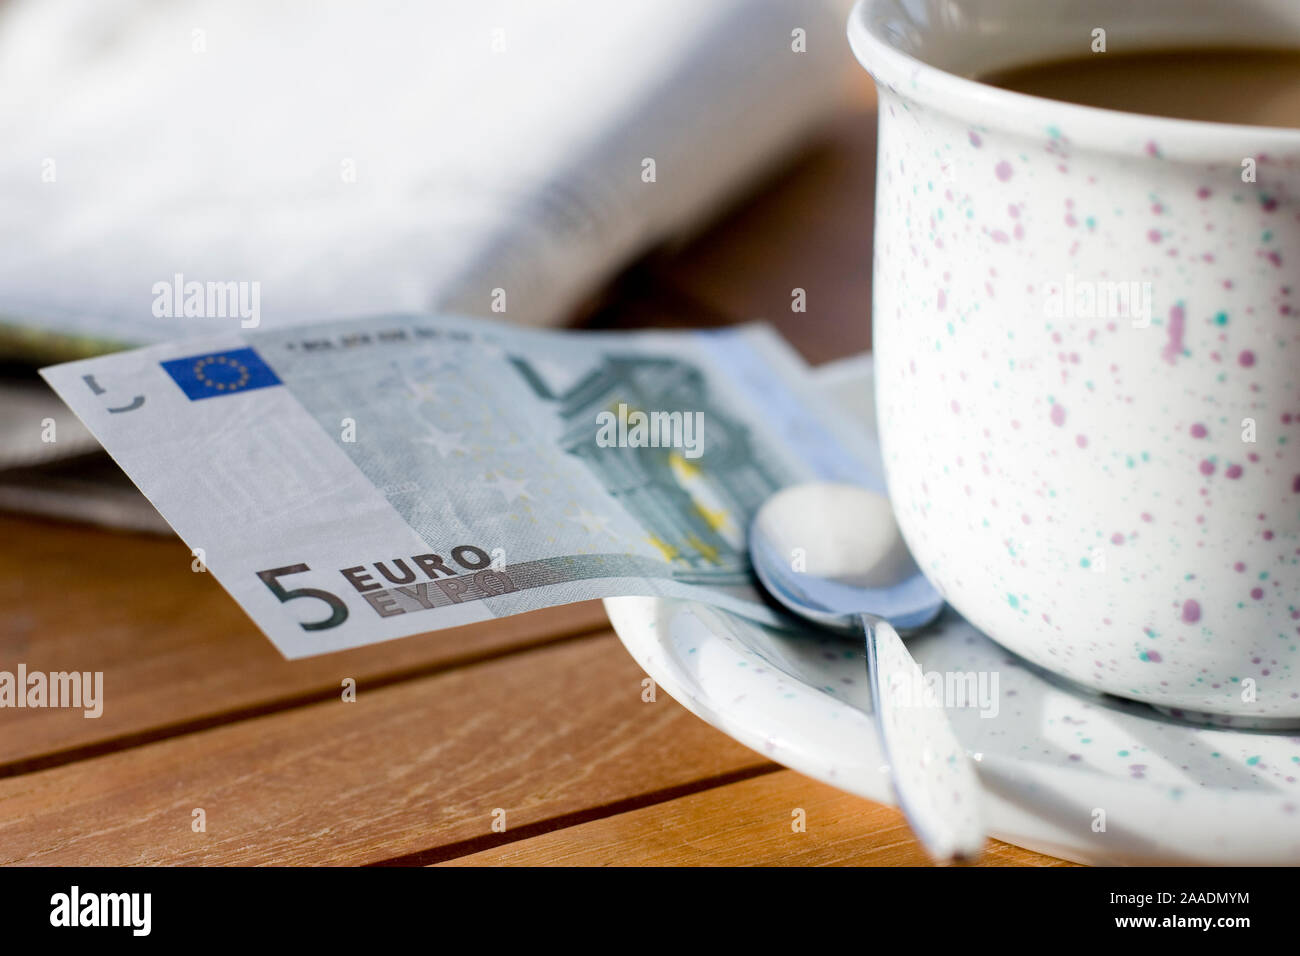 Fünf Euroschein un einer Kaffeetasse Foto de stock